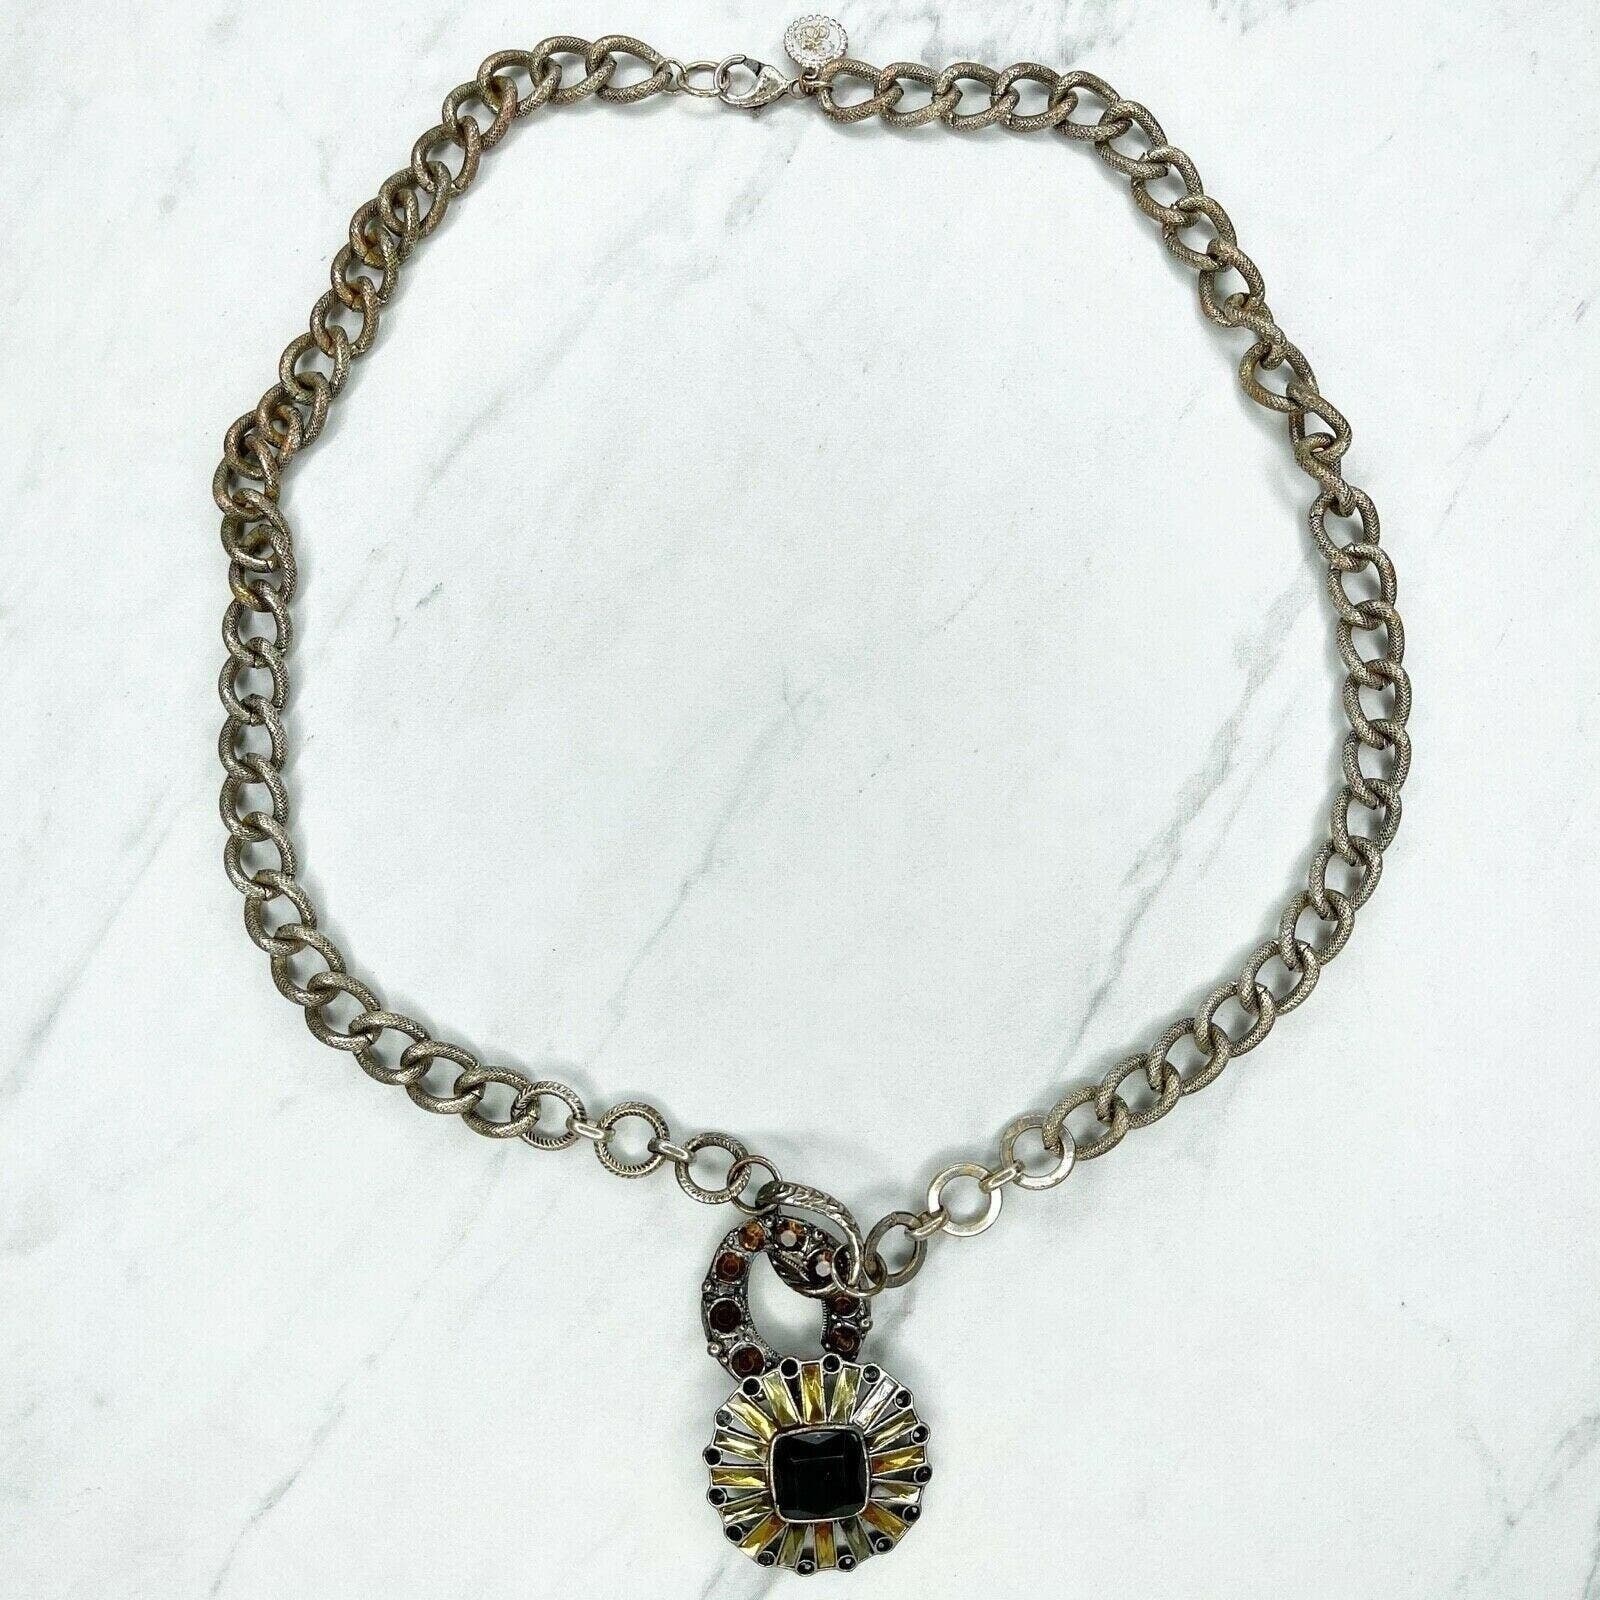 Jessica Simpson Silver Tone Rhinestone Pendant Chain Link Necklace - $6.92